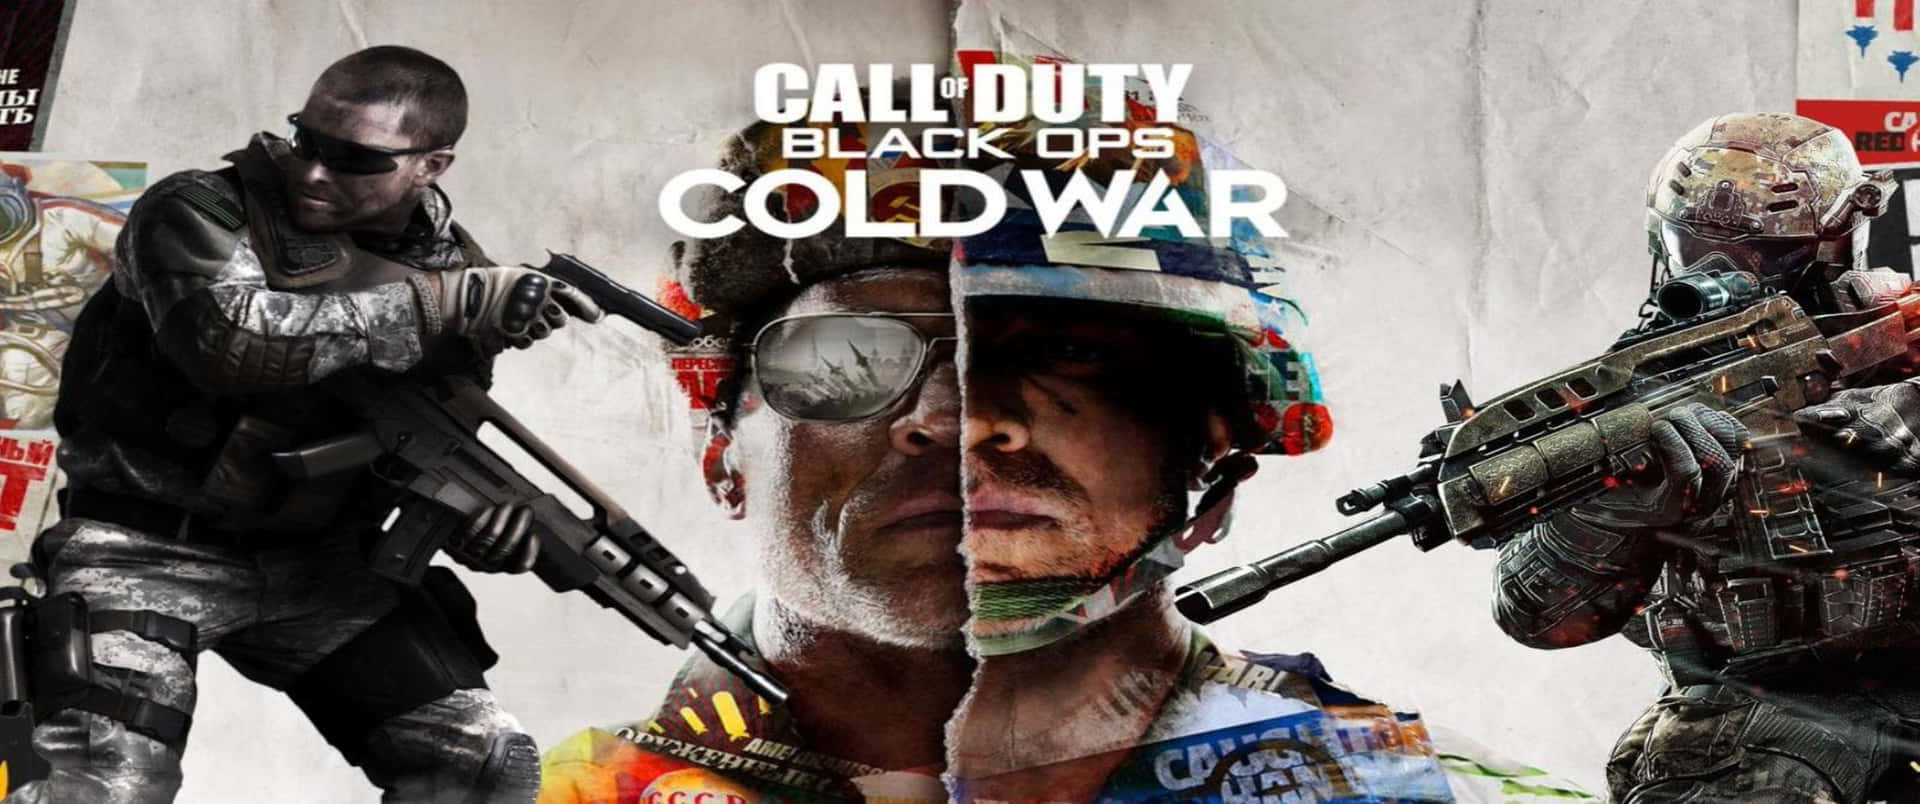 Callof Duty Black Ops Cold War - Guerra Fredda